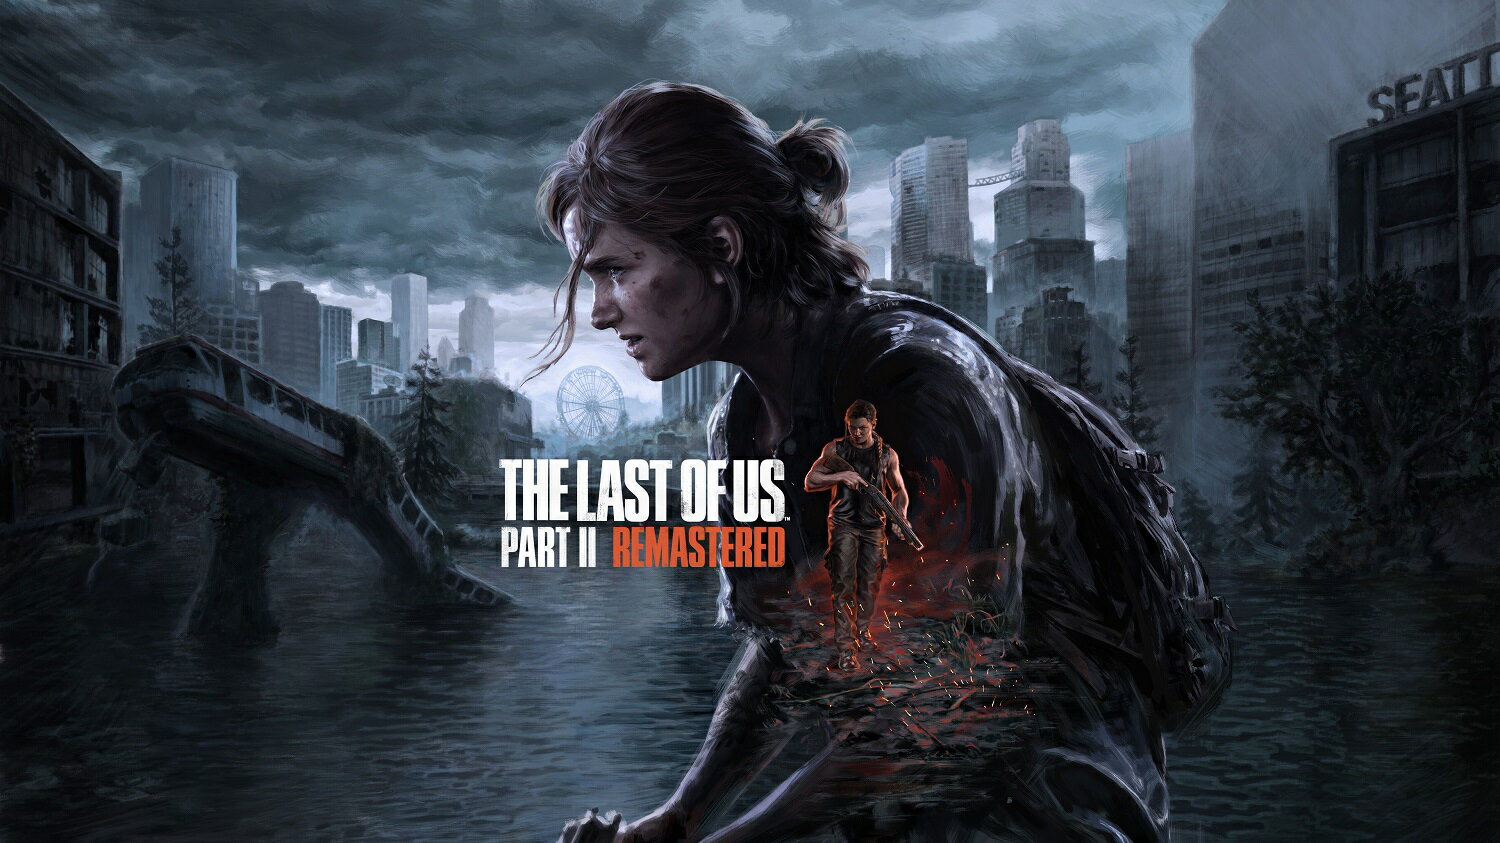 【特典】The Last of Us Part II Remastered(【早期購入封入特典】装弾数増加、工作サバイバルガイド)